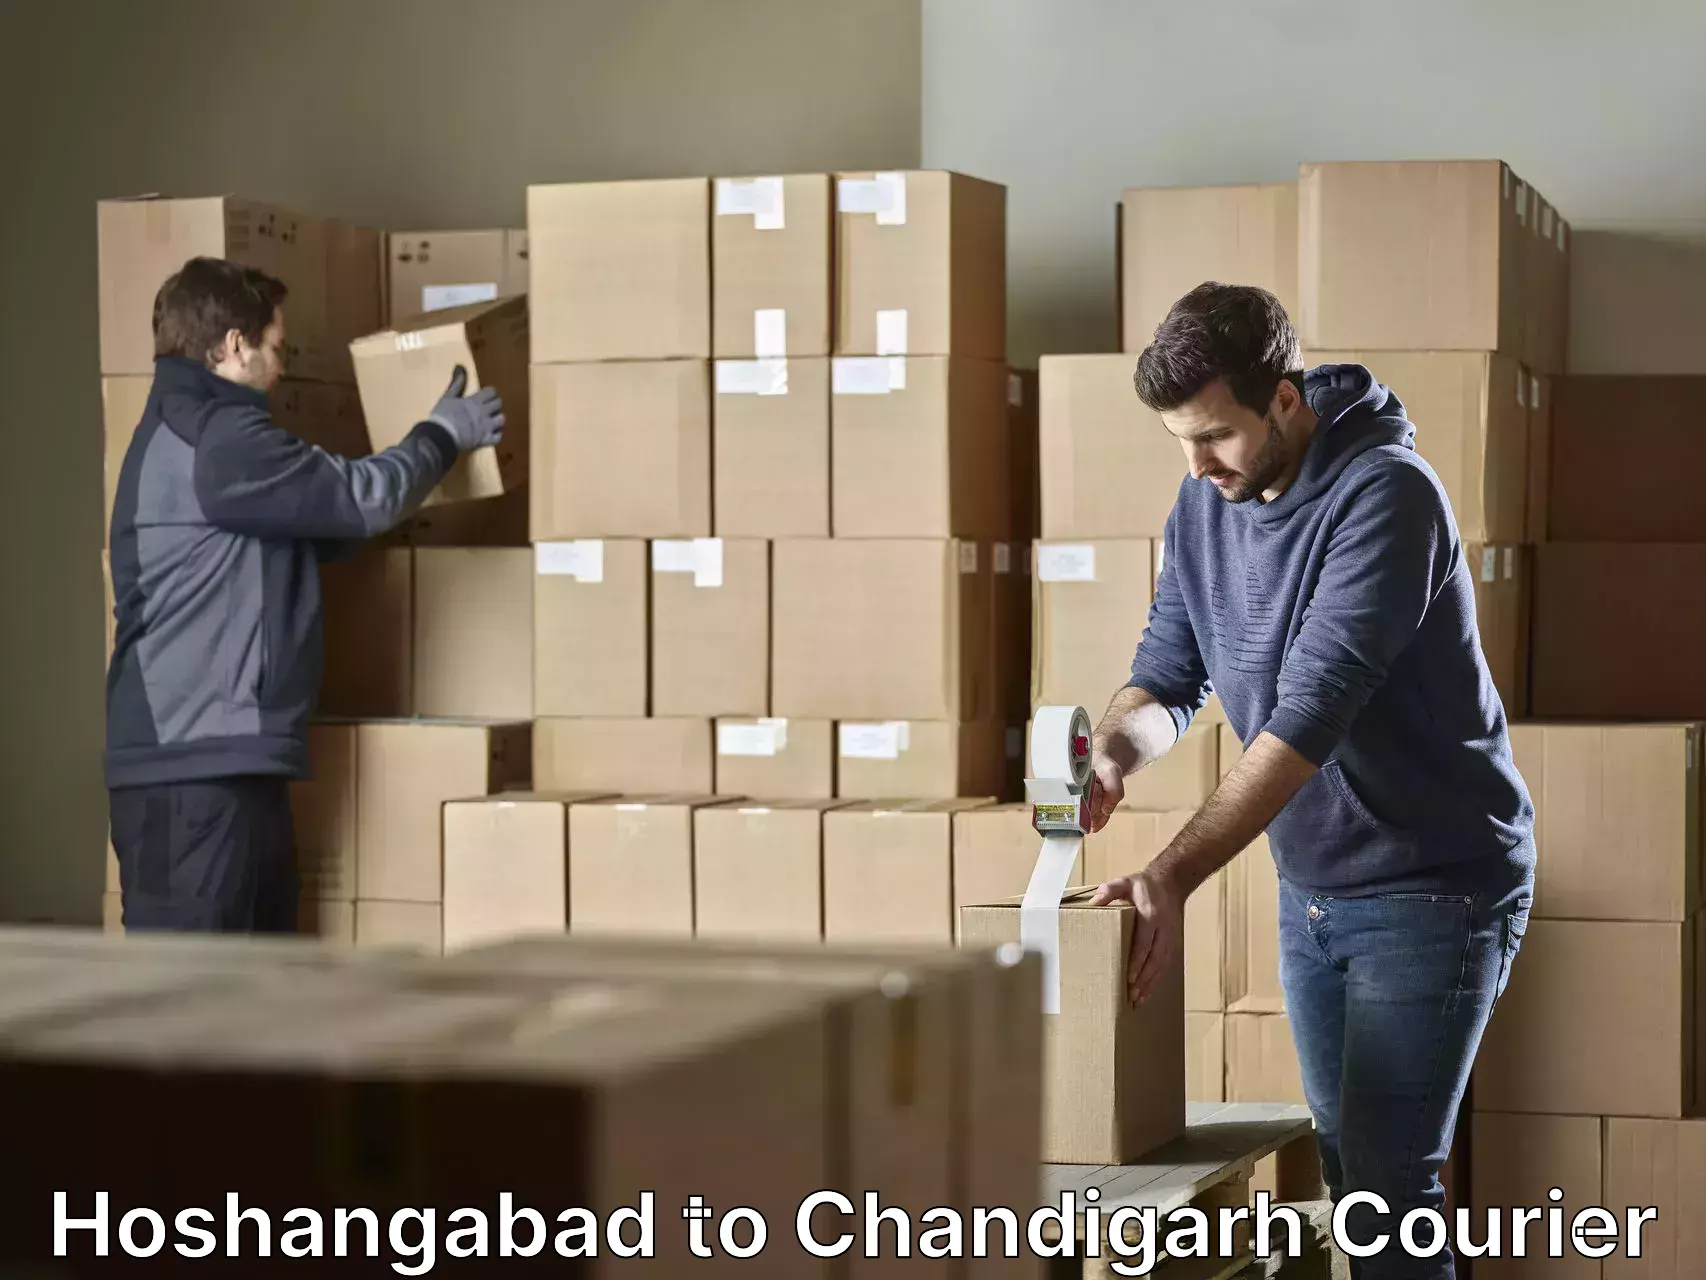 Furniture moving experts Hoshangabad to Chandigarh